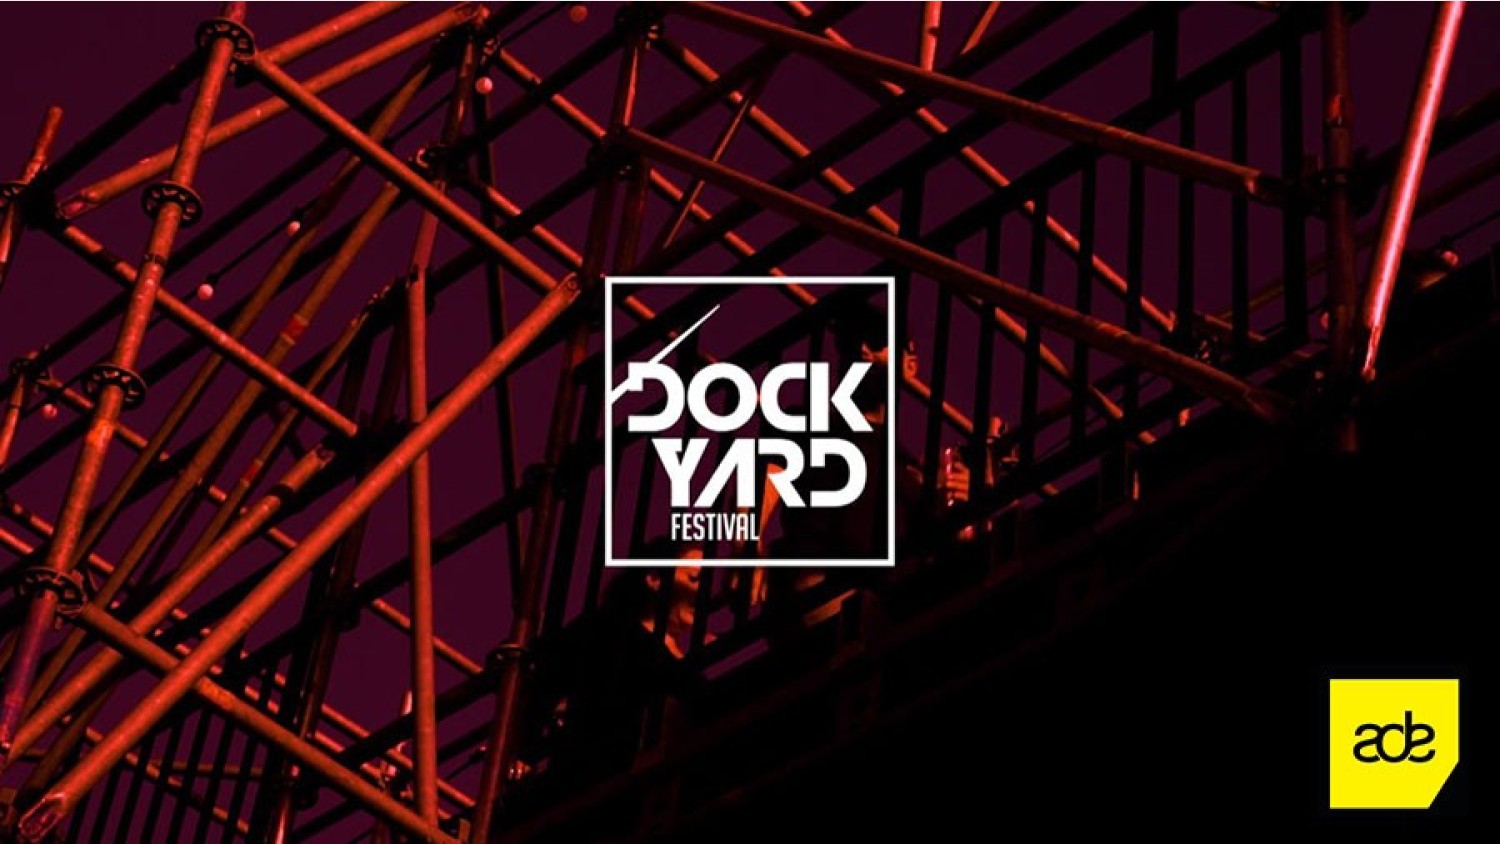 Party nieuws: Pre-registratie geopend Dockyard Festival ADE 2021